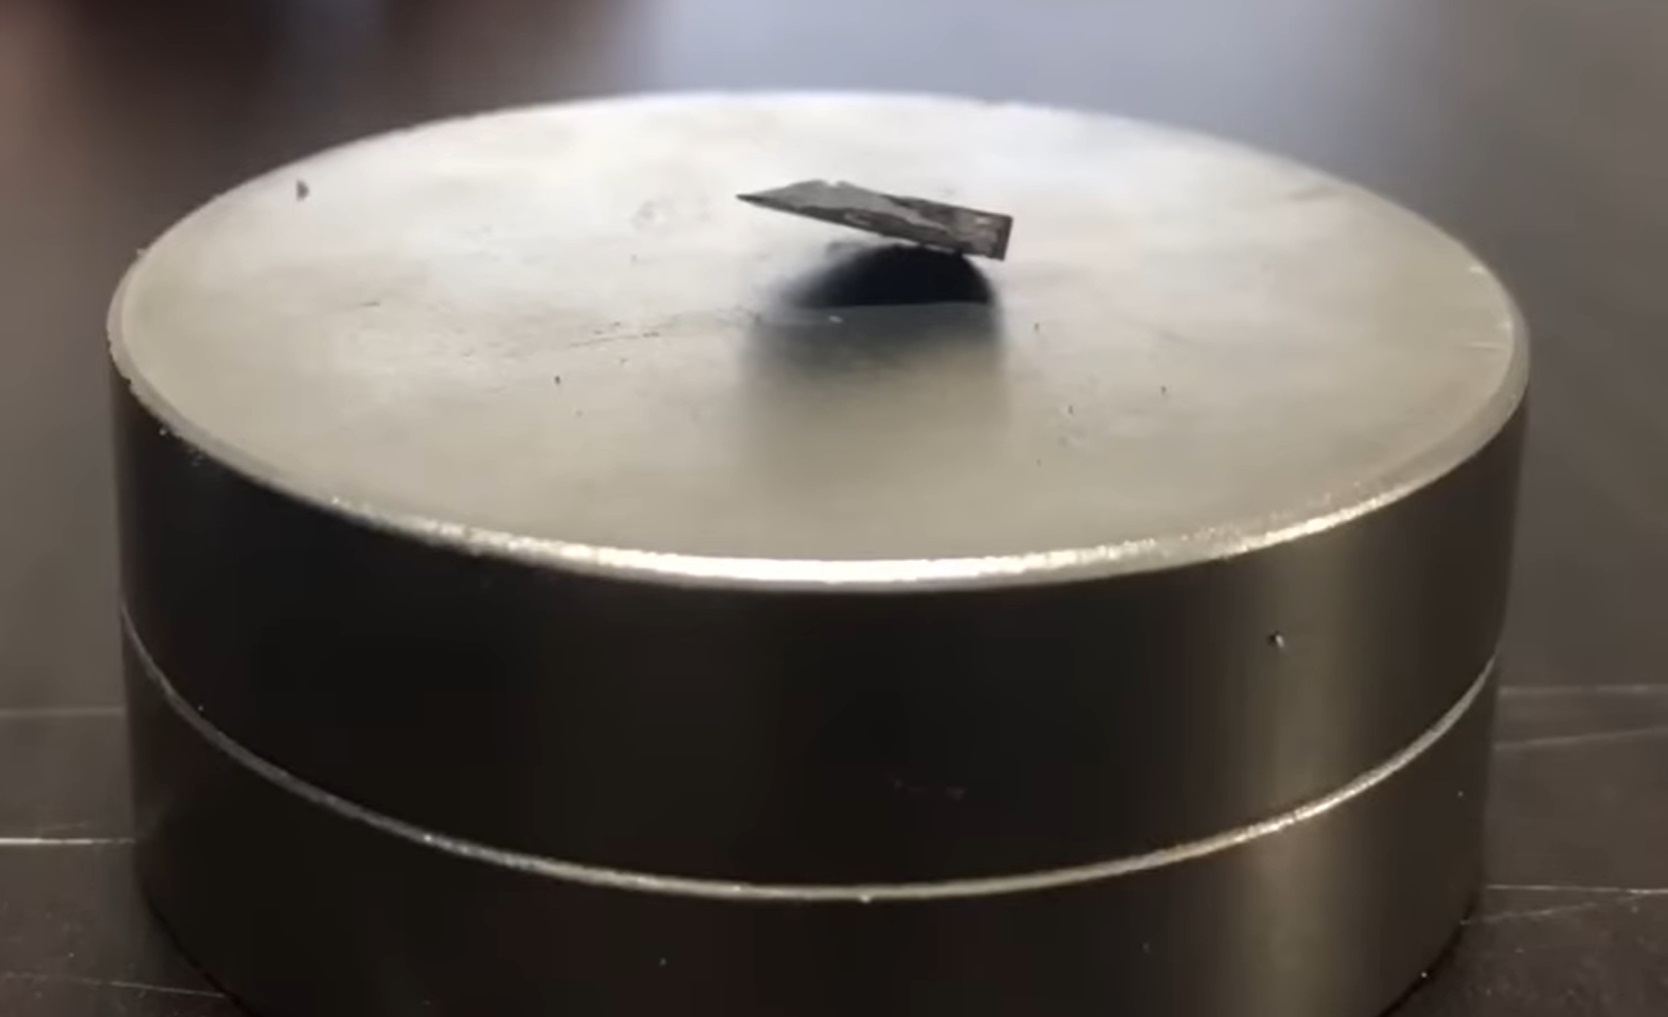 Descubierto el primer superconductor a temperatura ambiente y presión ambiental